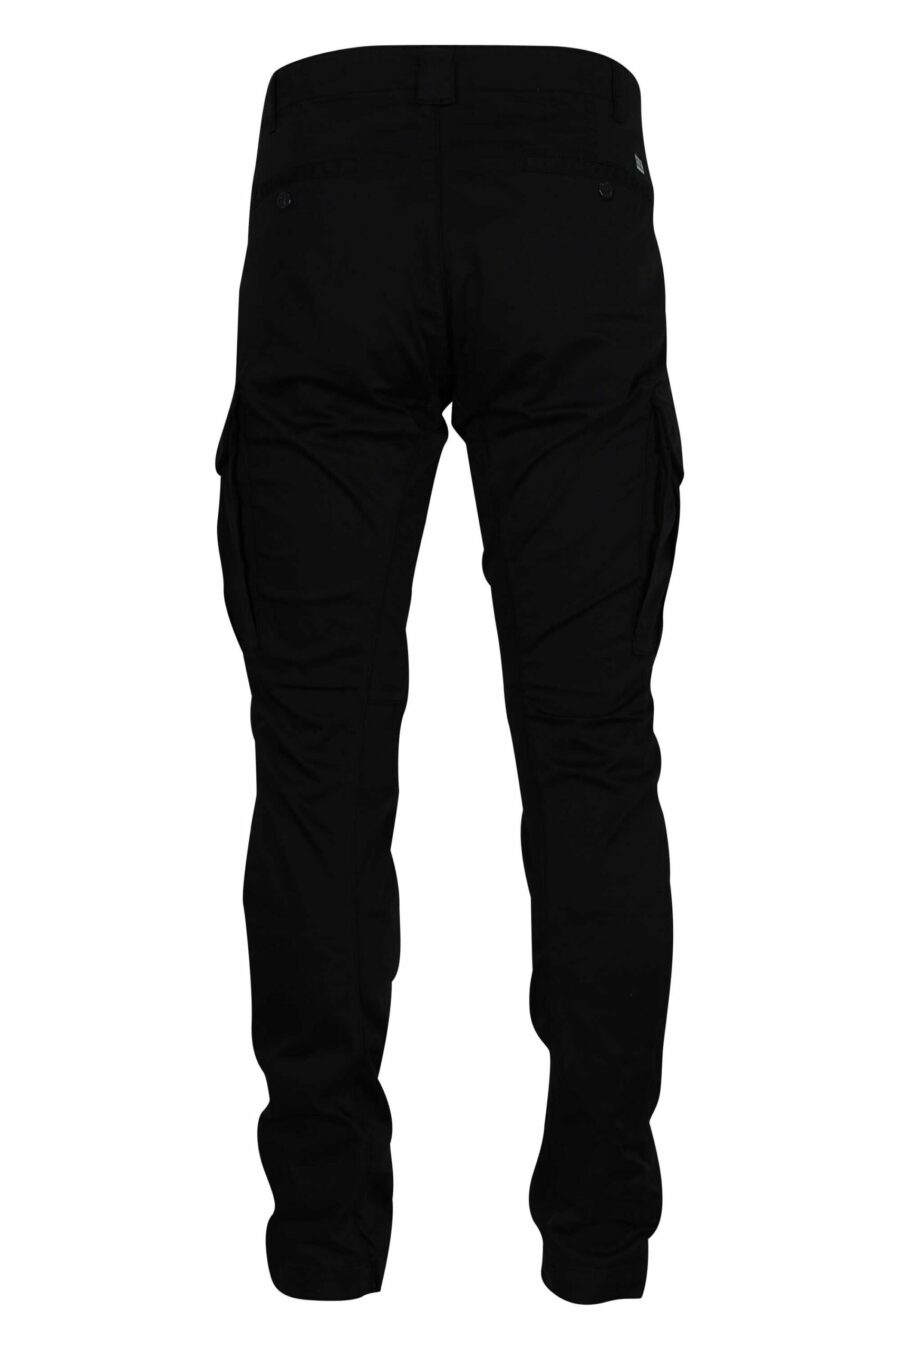 Pantalón negro estilo cargo con minilogo lente - 7620943717808 1 scaled